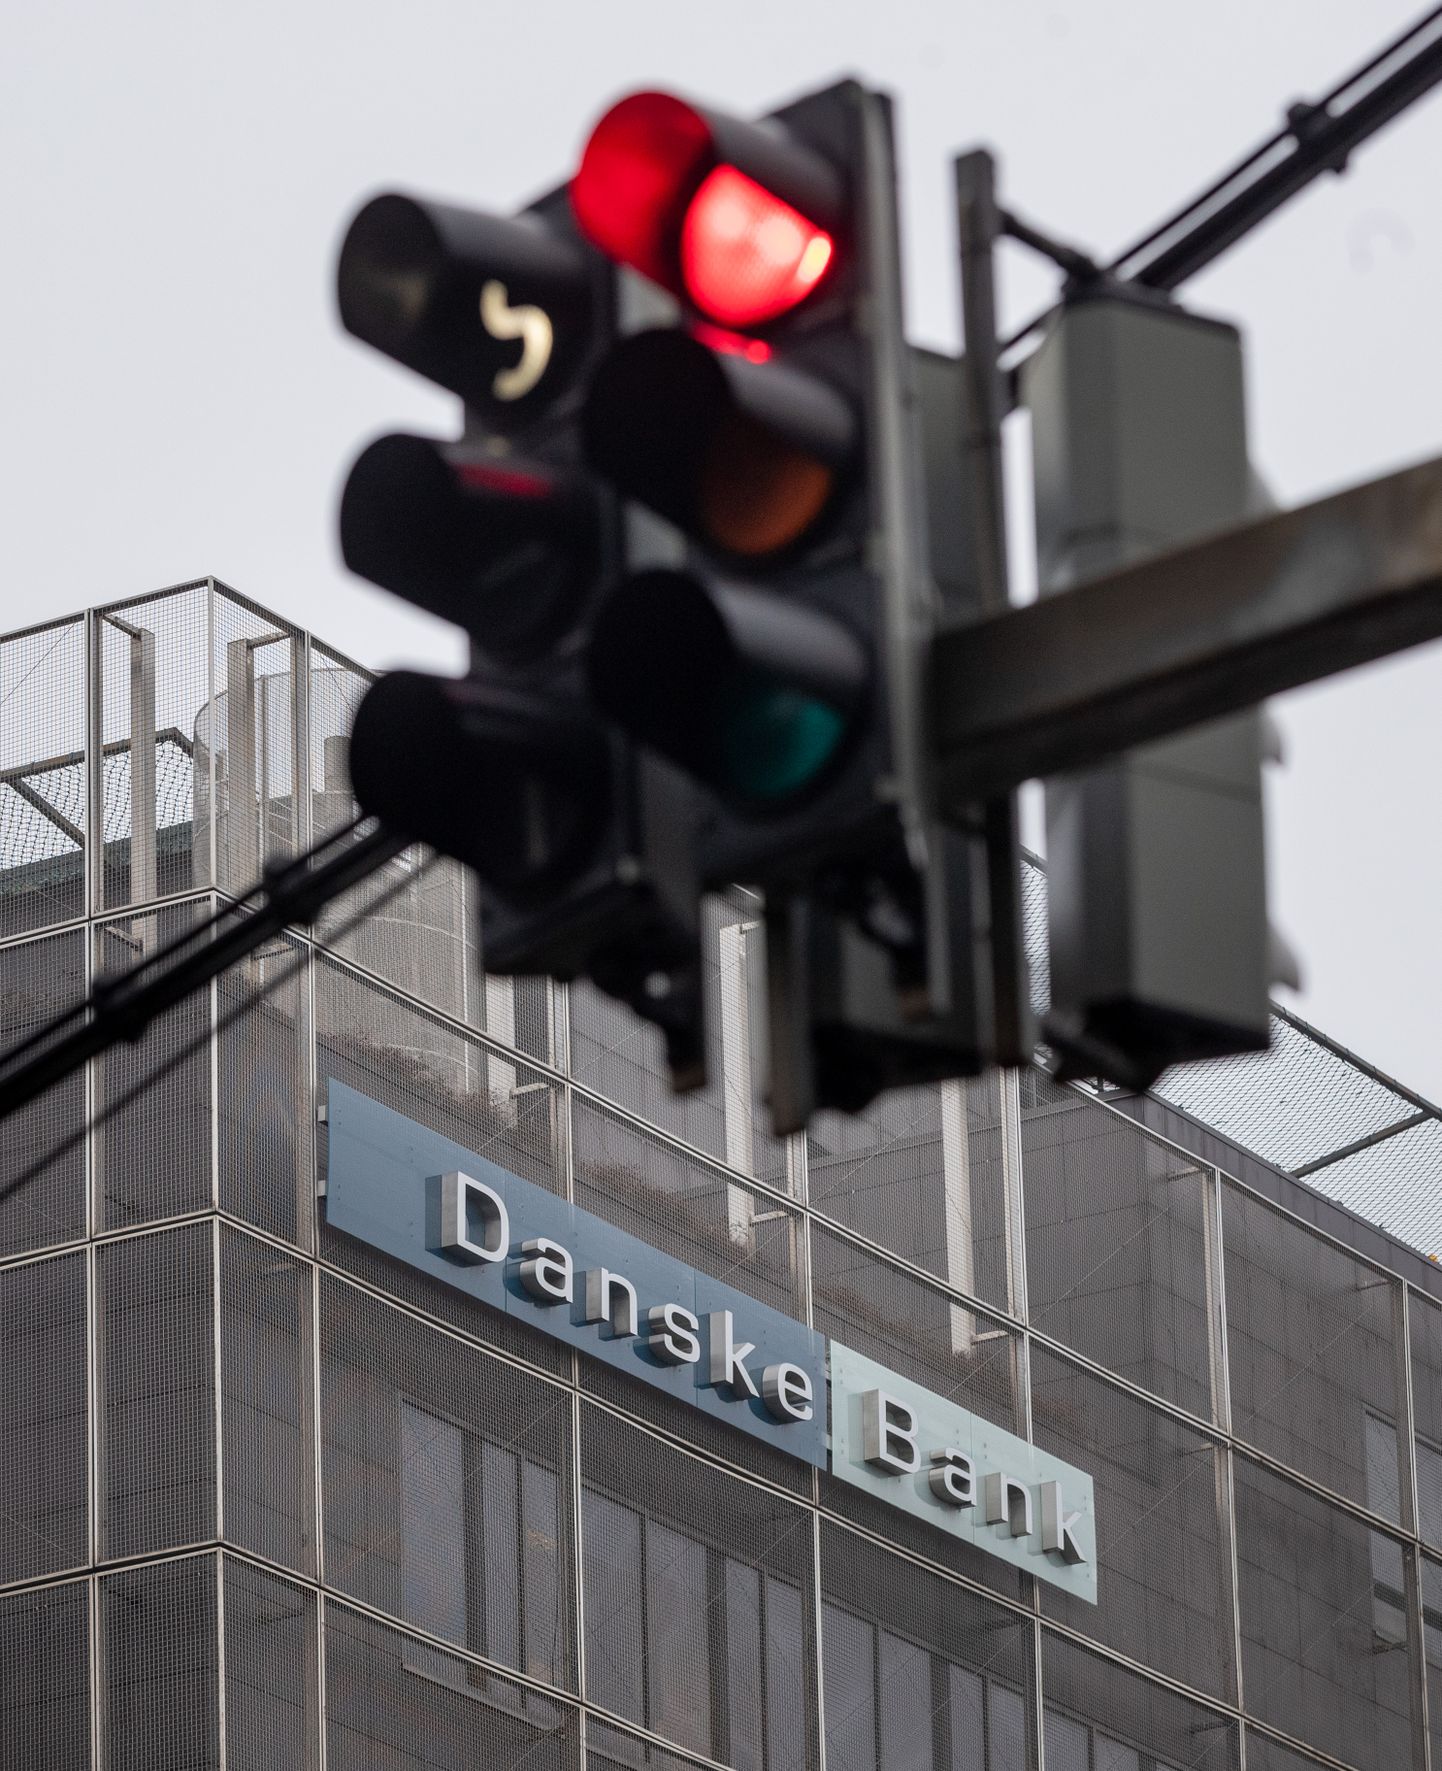 Finantsinspektsiooni Danske Bankile ettekirjutuse, mille järgi peab pank enda tegevuse Eestis lõpetama kaheksa kuu jooksul.